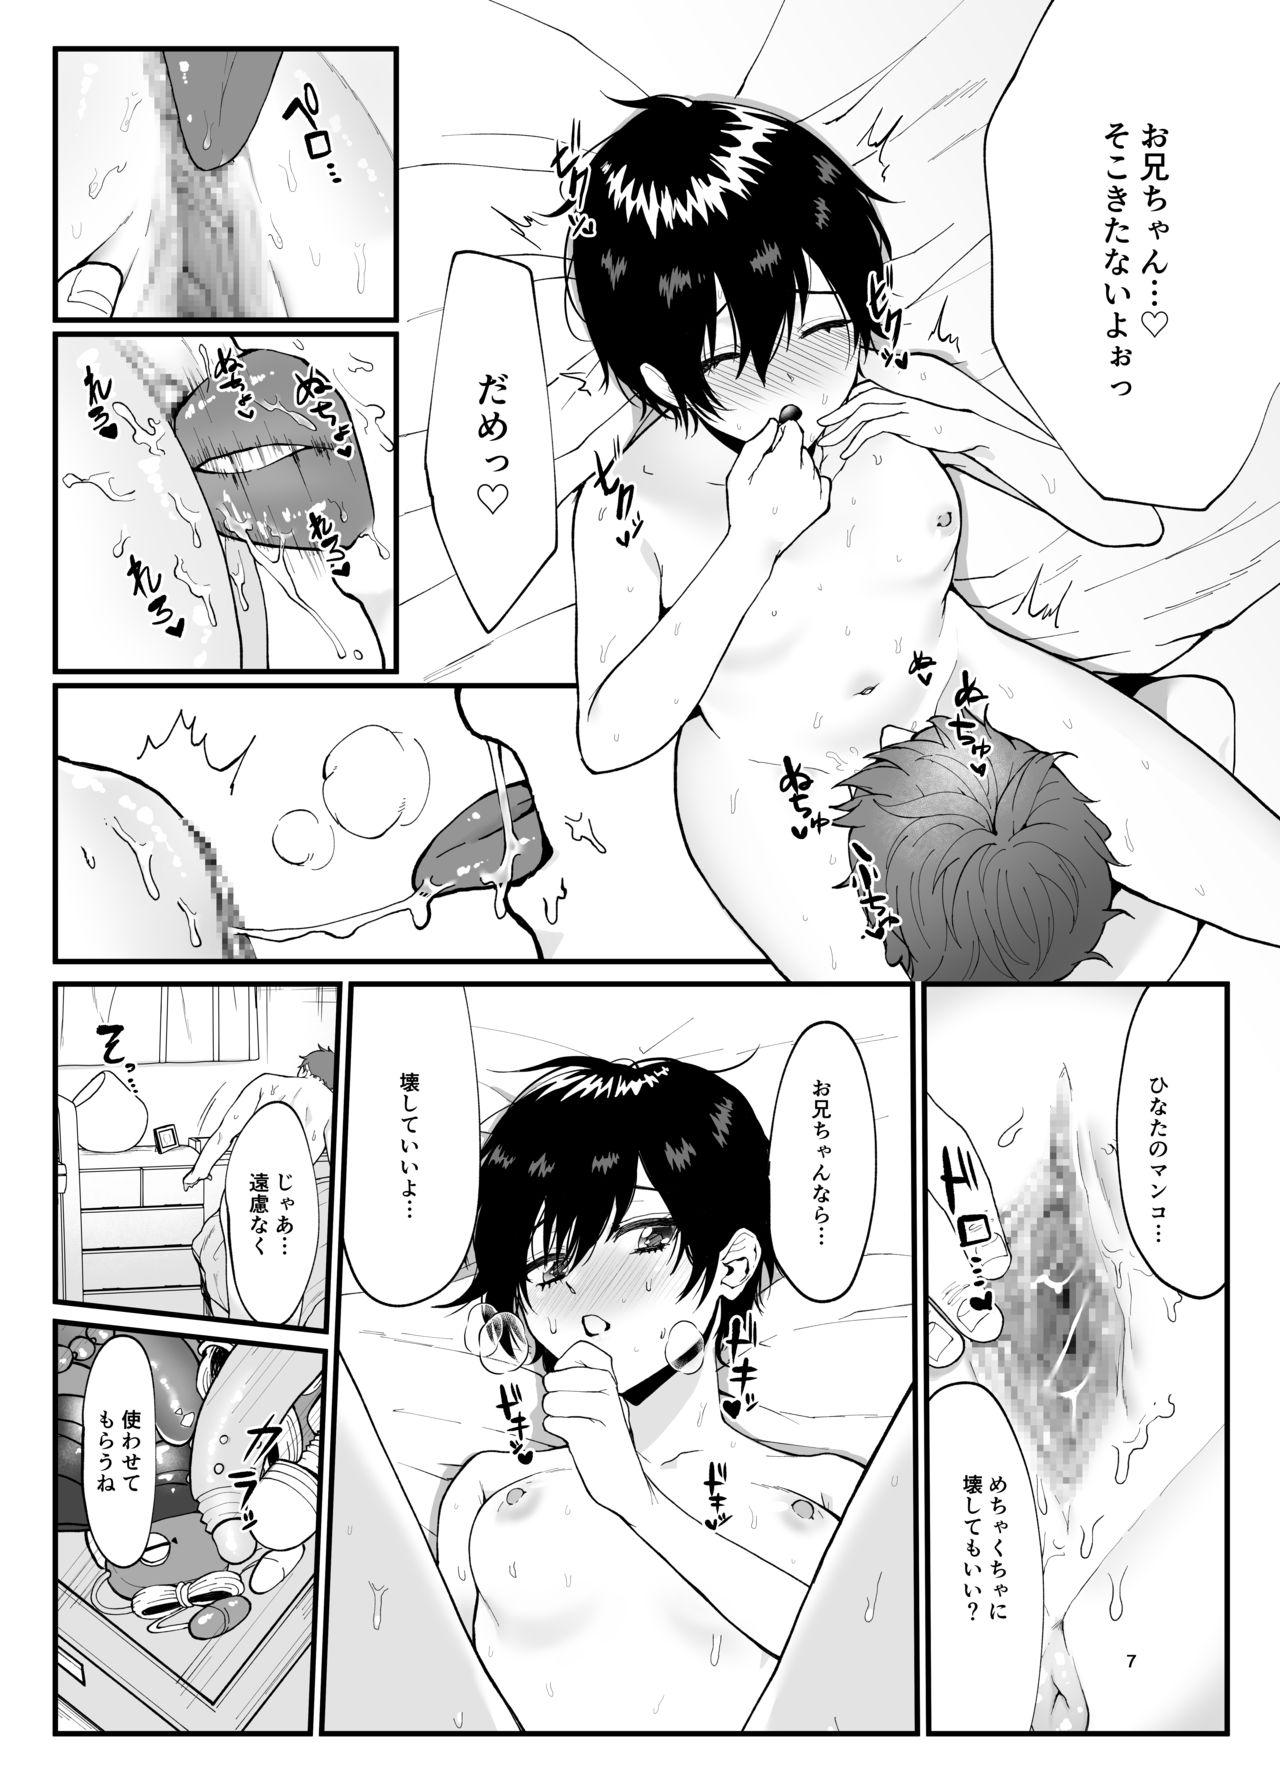 Eating Pussy Otoko ppoi rori ga chōkyō sa reru hon - Original Mulata - Page 7